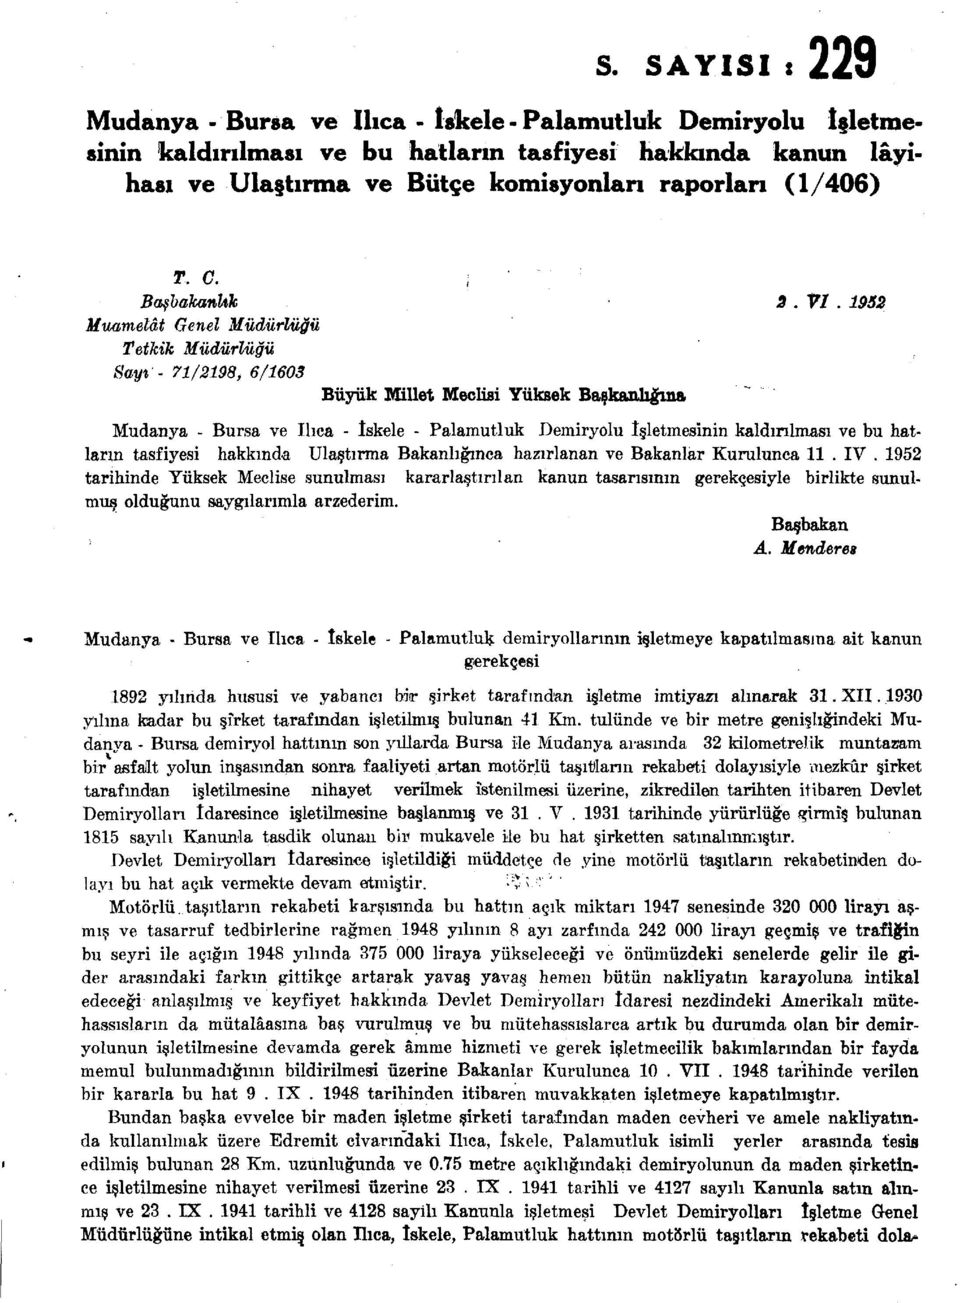 1952 Muamelât Genel Müdürlüğü Tetkik Müdürlüğü Sayt - 71/2198, 6/1603 Büyük Millet Meclisi Yüksek Başkanlığına Mudanya - Bursa ve Ilıca - İskele - Palamutluk Demiryolu İşletmesinin kaldırılması ve bu